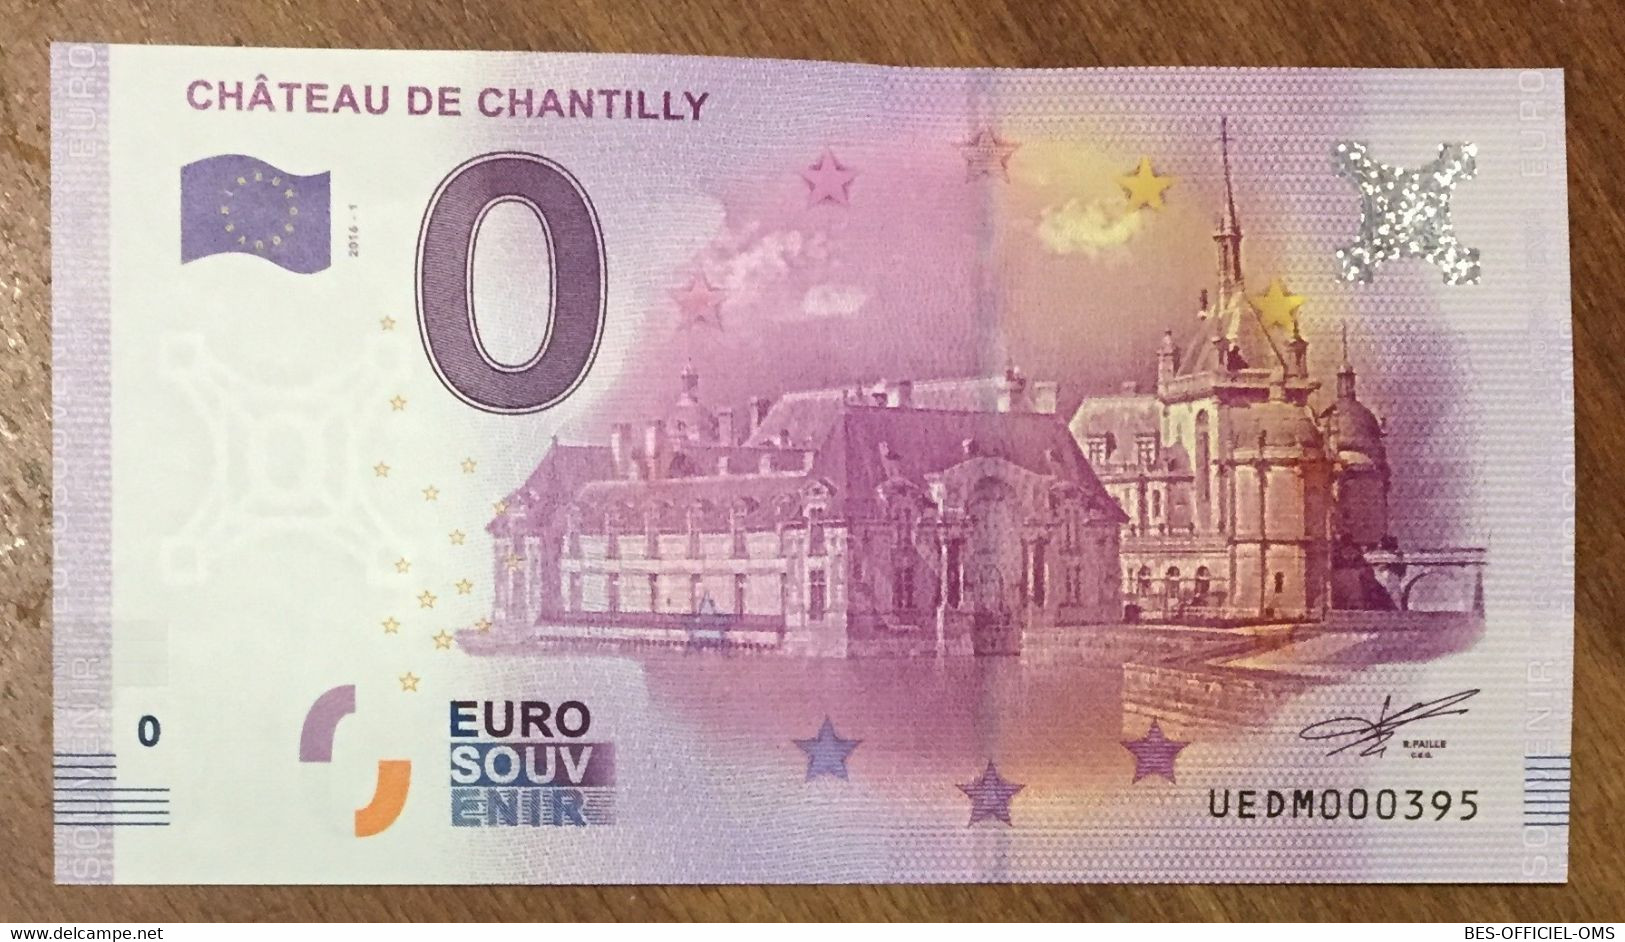 2016 BILLET 0 EURO SOUVENIR DPT 60 CHÂTEAU DE CHANTILLY ZERO 0 EURO SCHEIN BANKNOTE PAPER MONEY BANK PAPER MONEY - Private Proofs / Unofficial